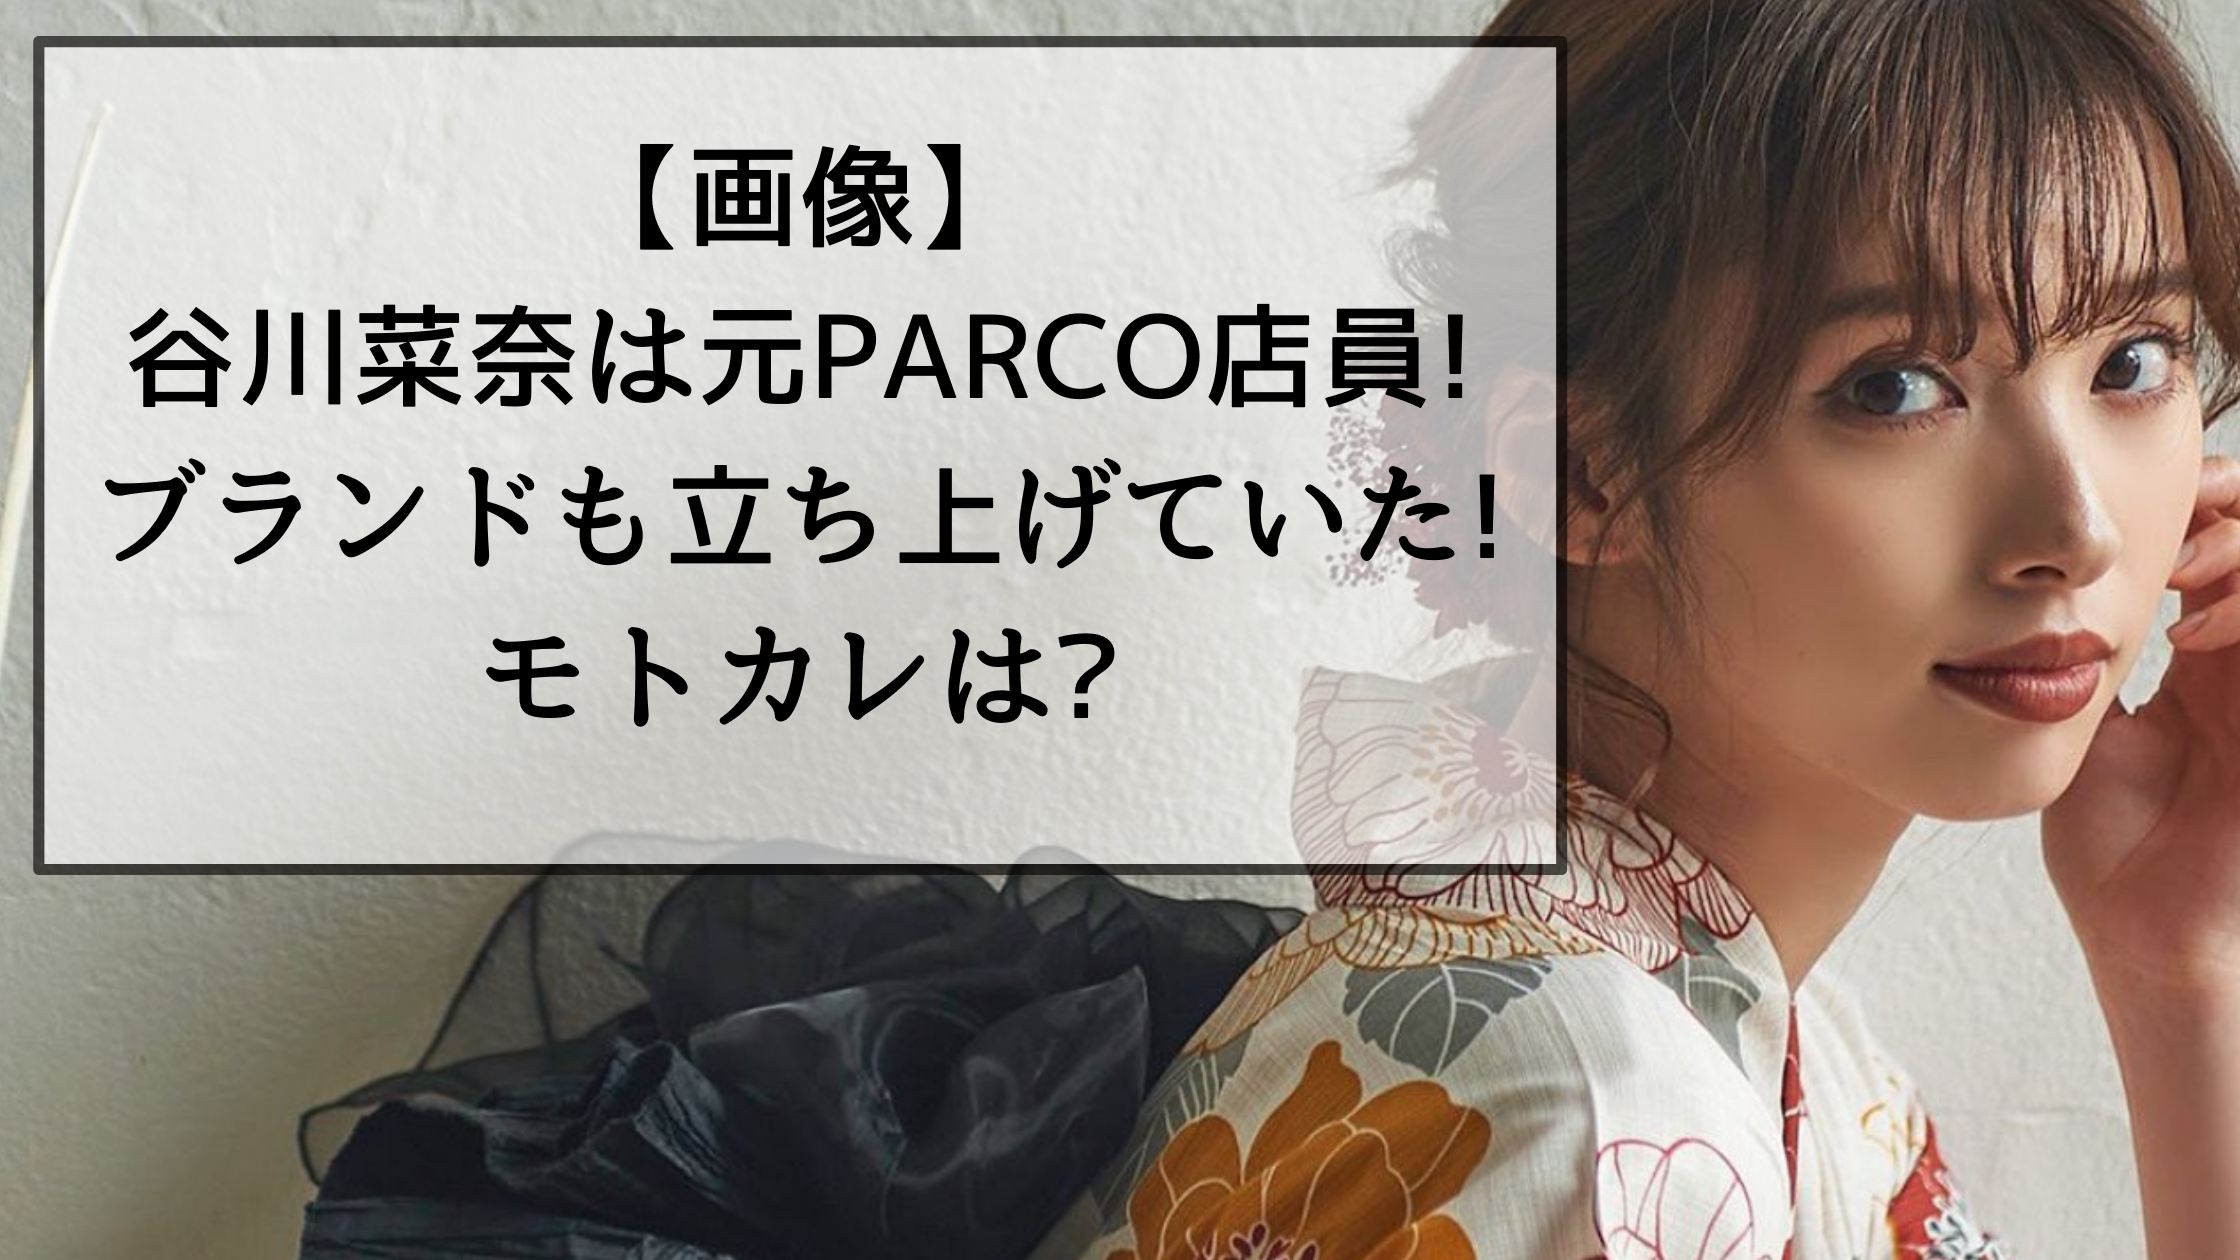 【画像】谷川菜奈は元PARCO店員!ブランドも立ち上げていた!モトカレは?